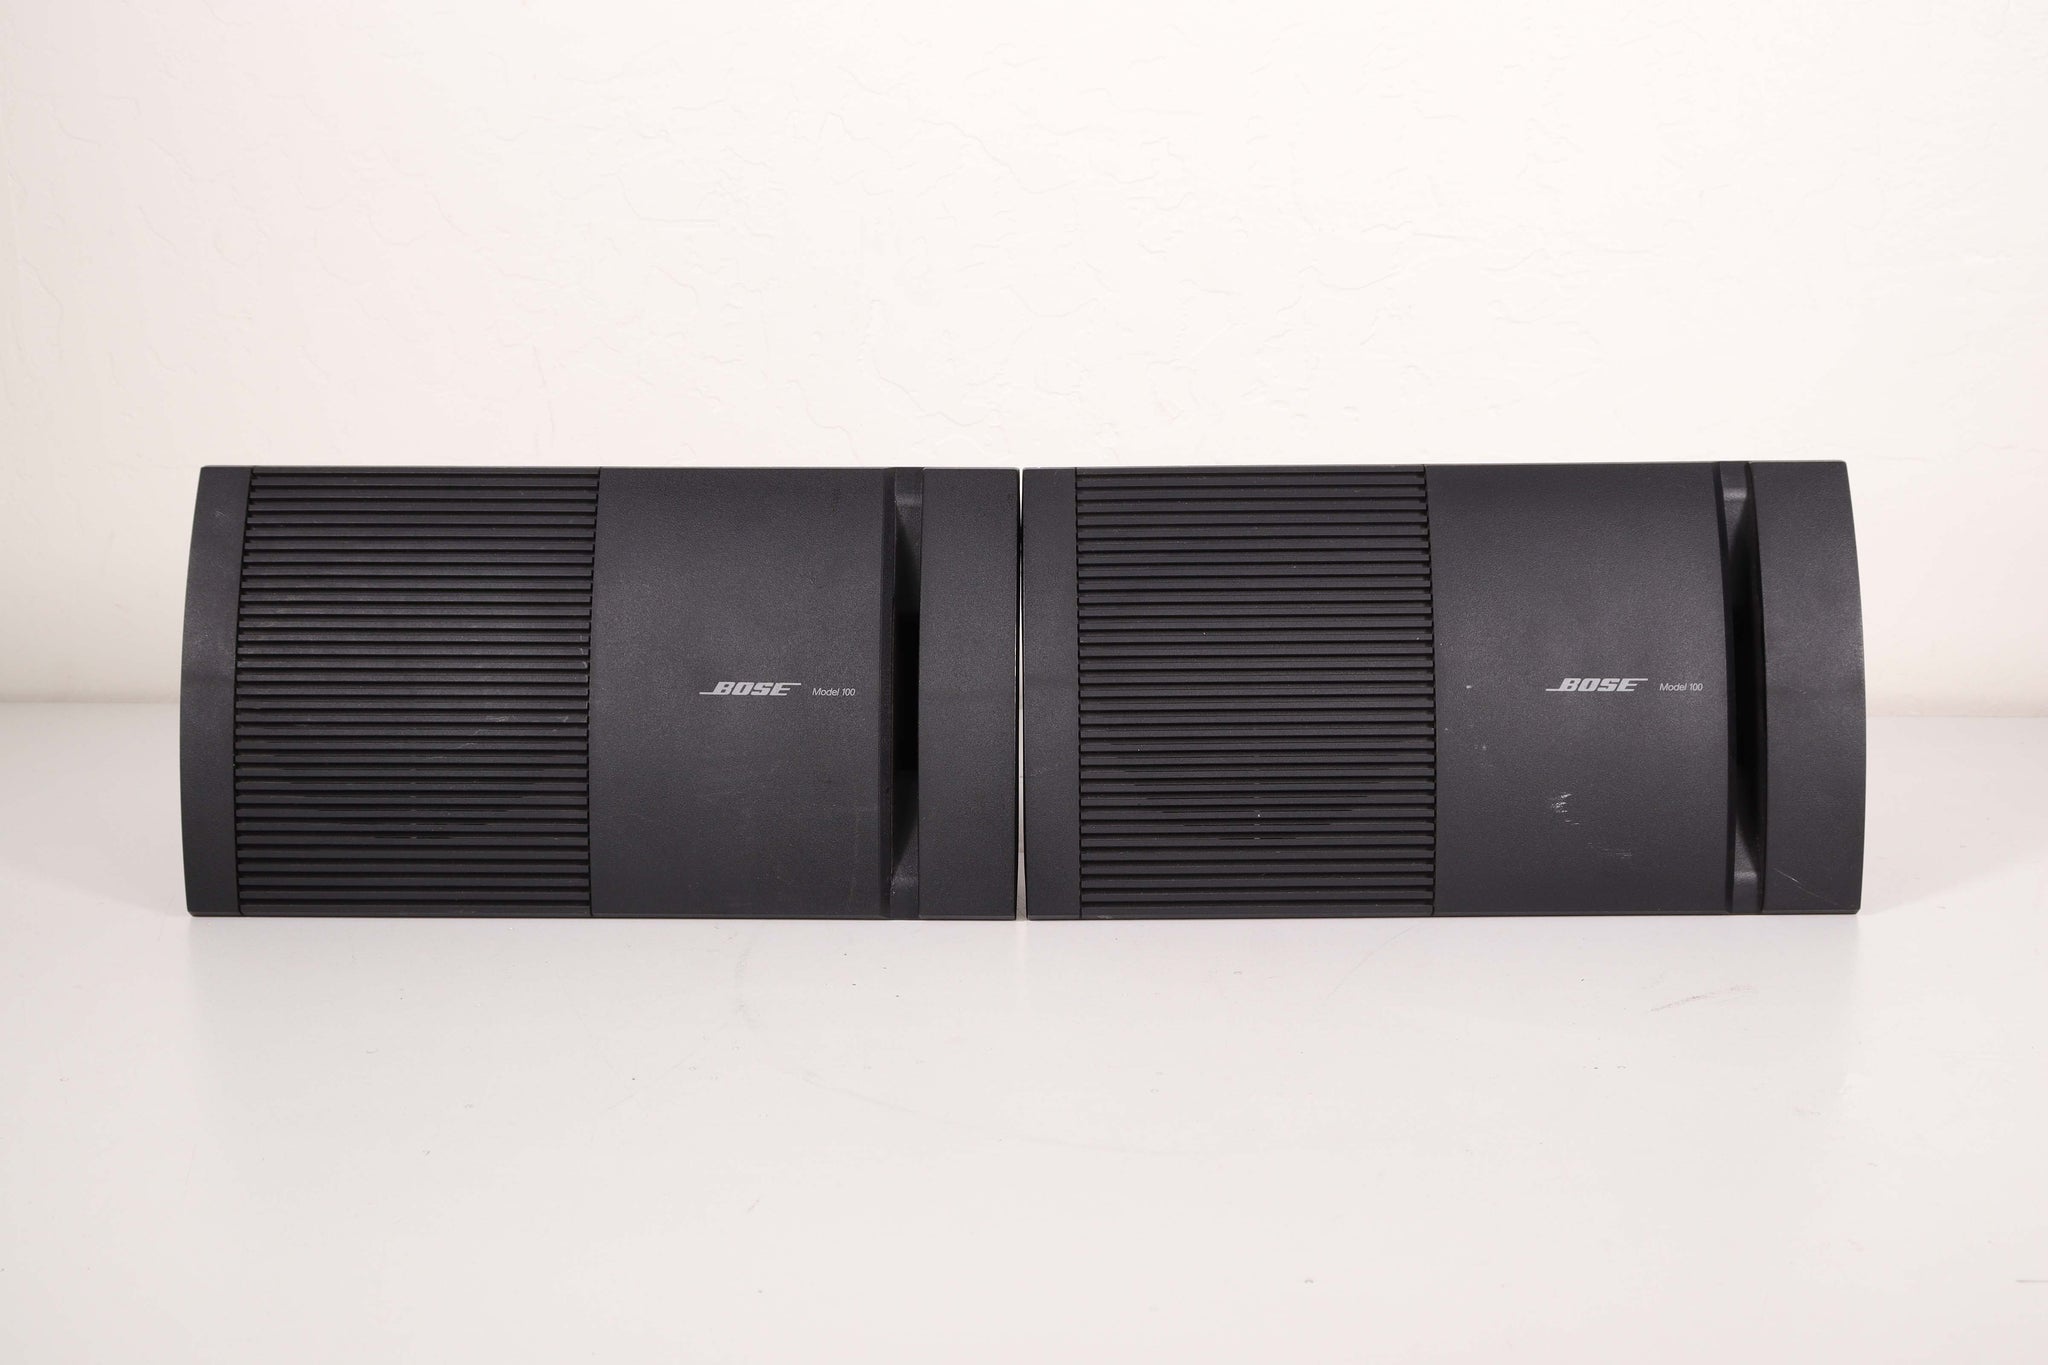 kuvert Krympe Kalkun Bose Model 100 Small Speaker Pair Outdoor Indoor